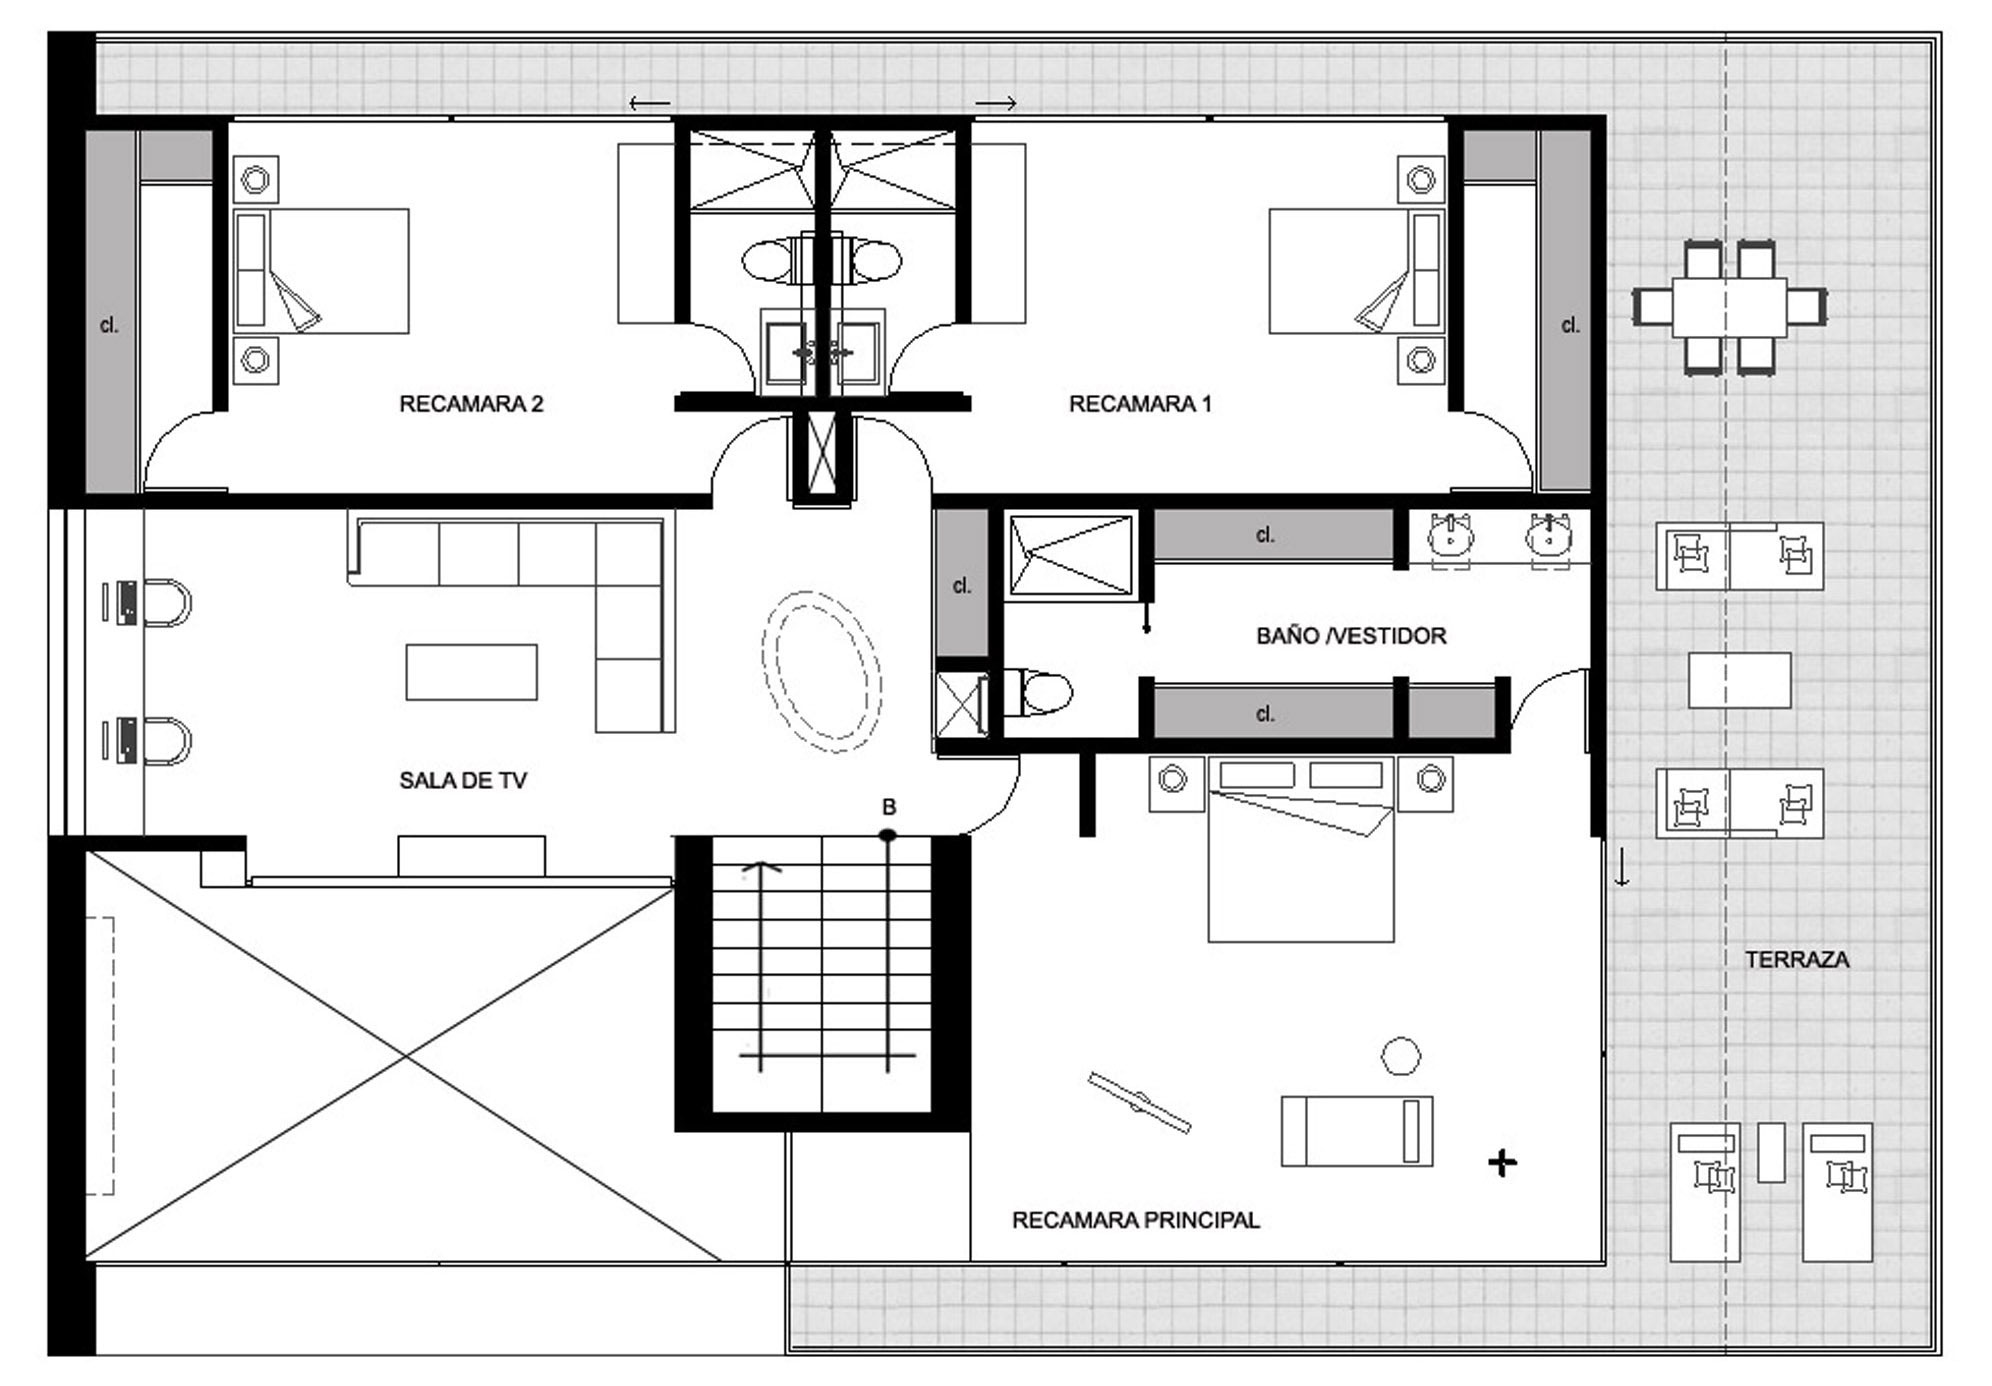 План схема помещений второго этажа и террасы